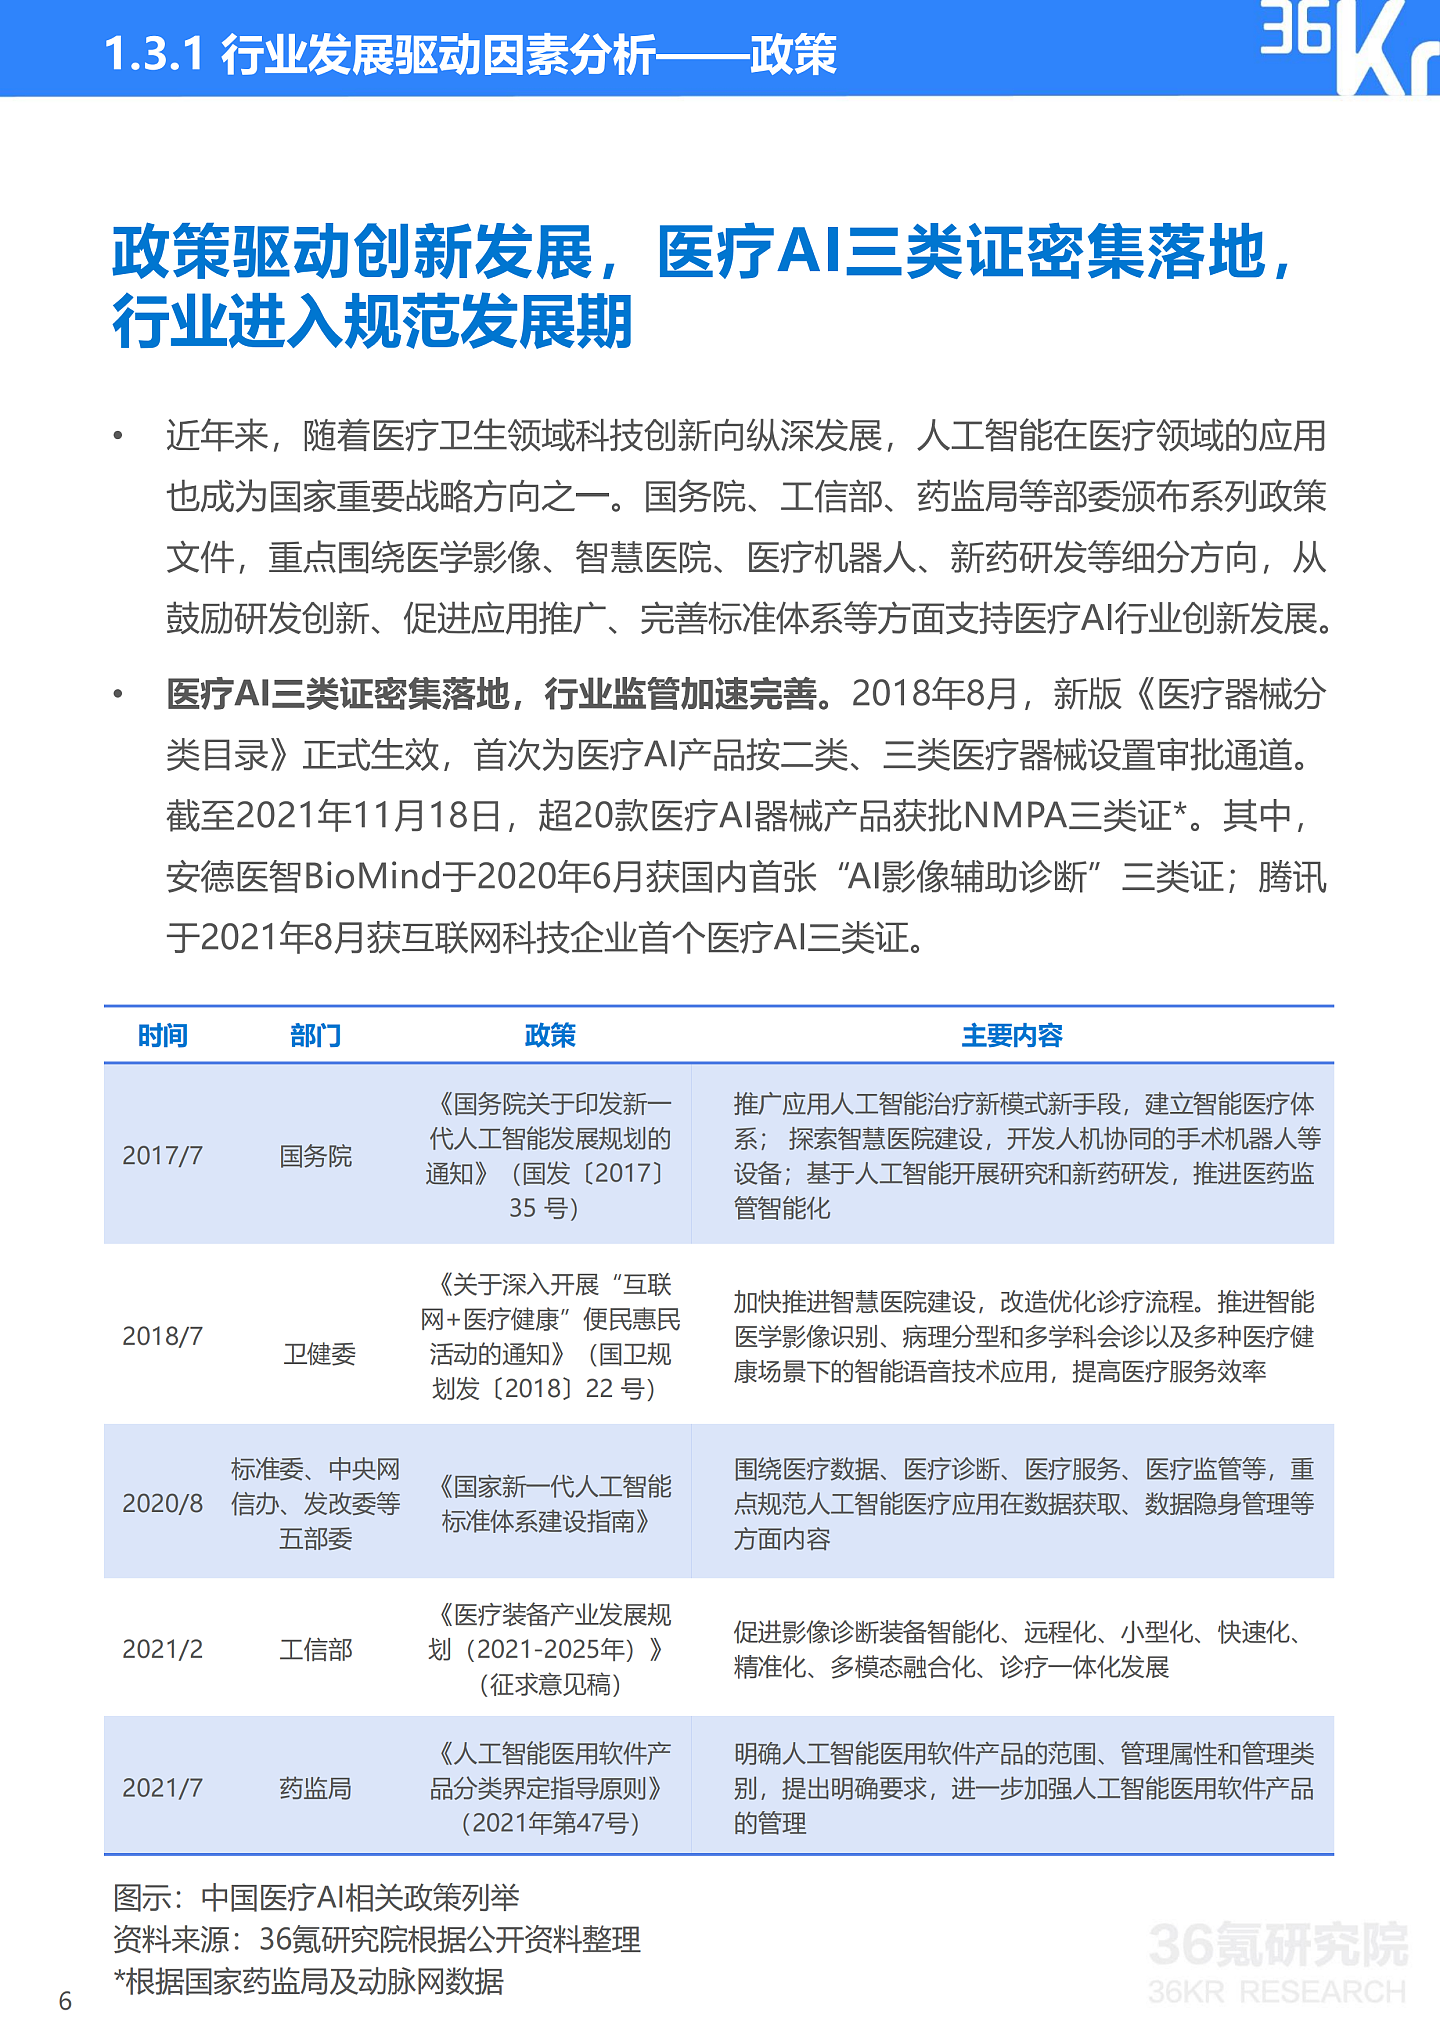 36氪研究院 | 2021年中国医疗AI行业研究报告 - 9